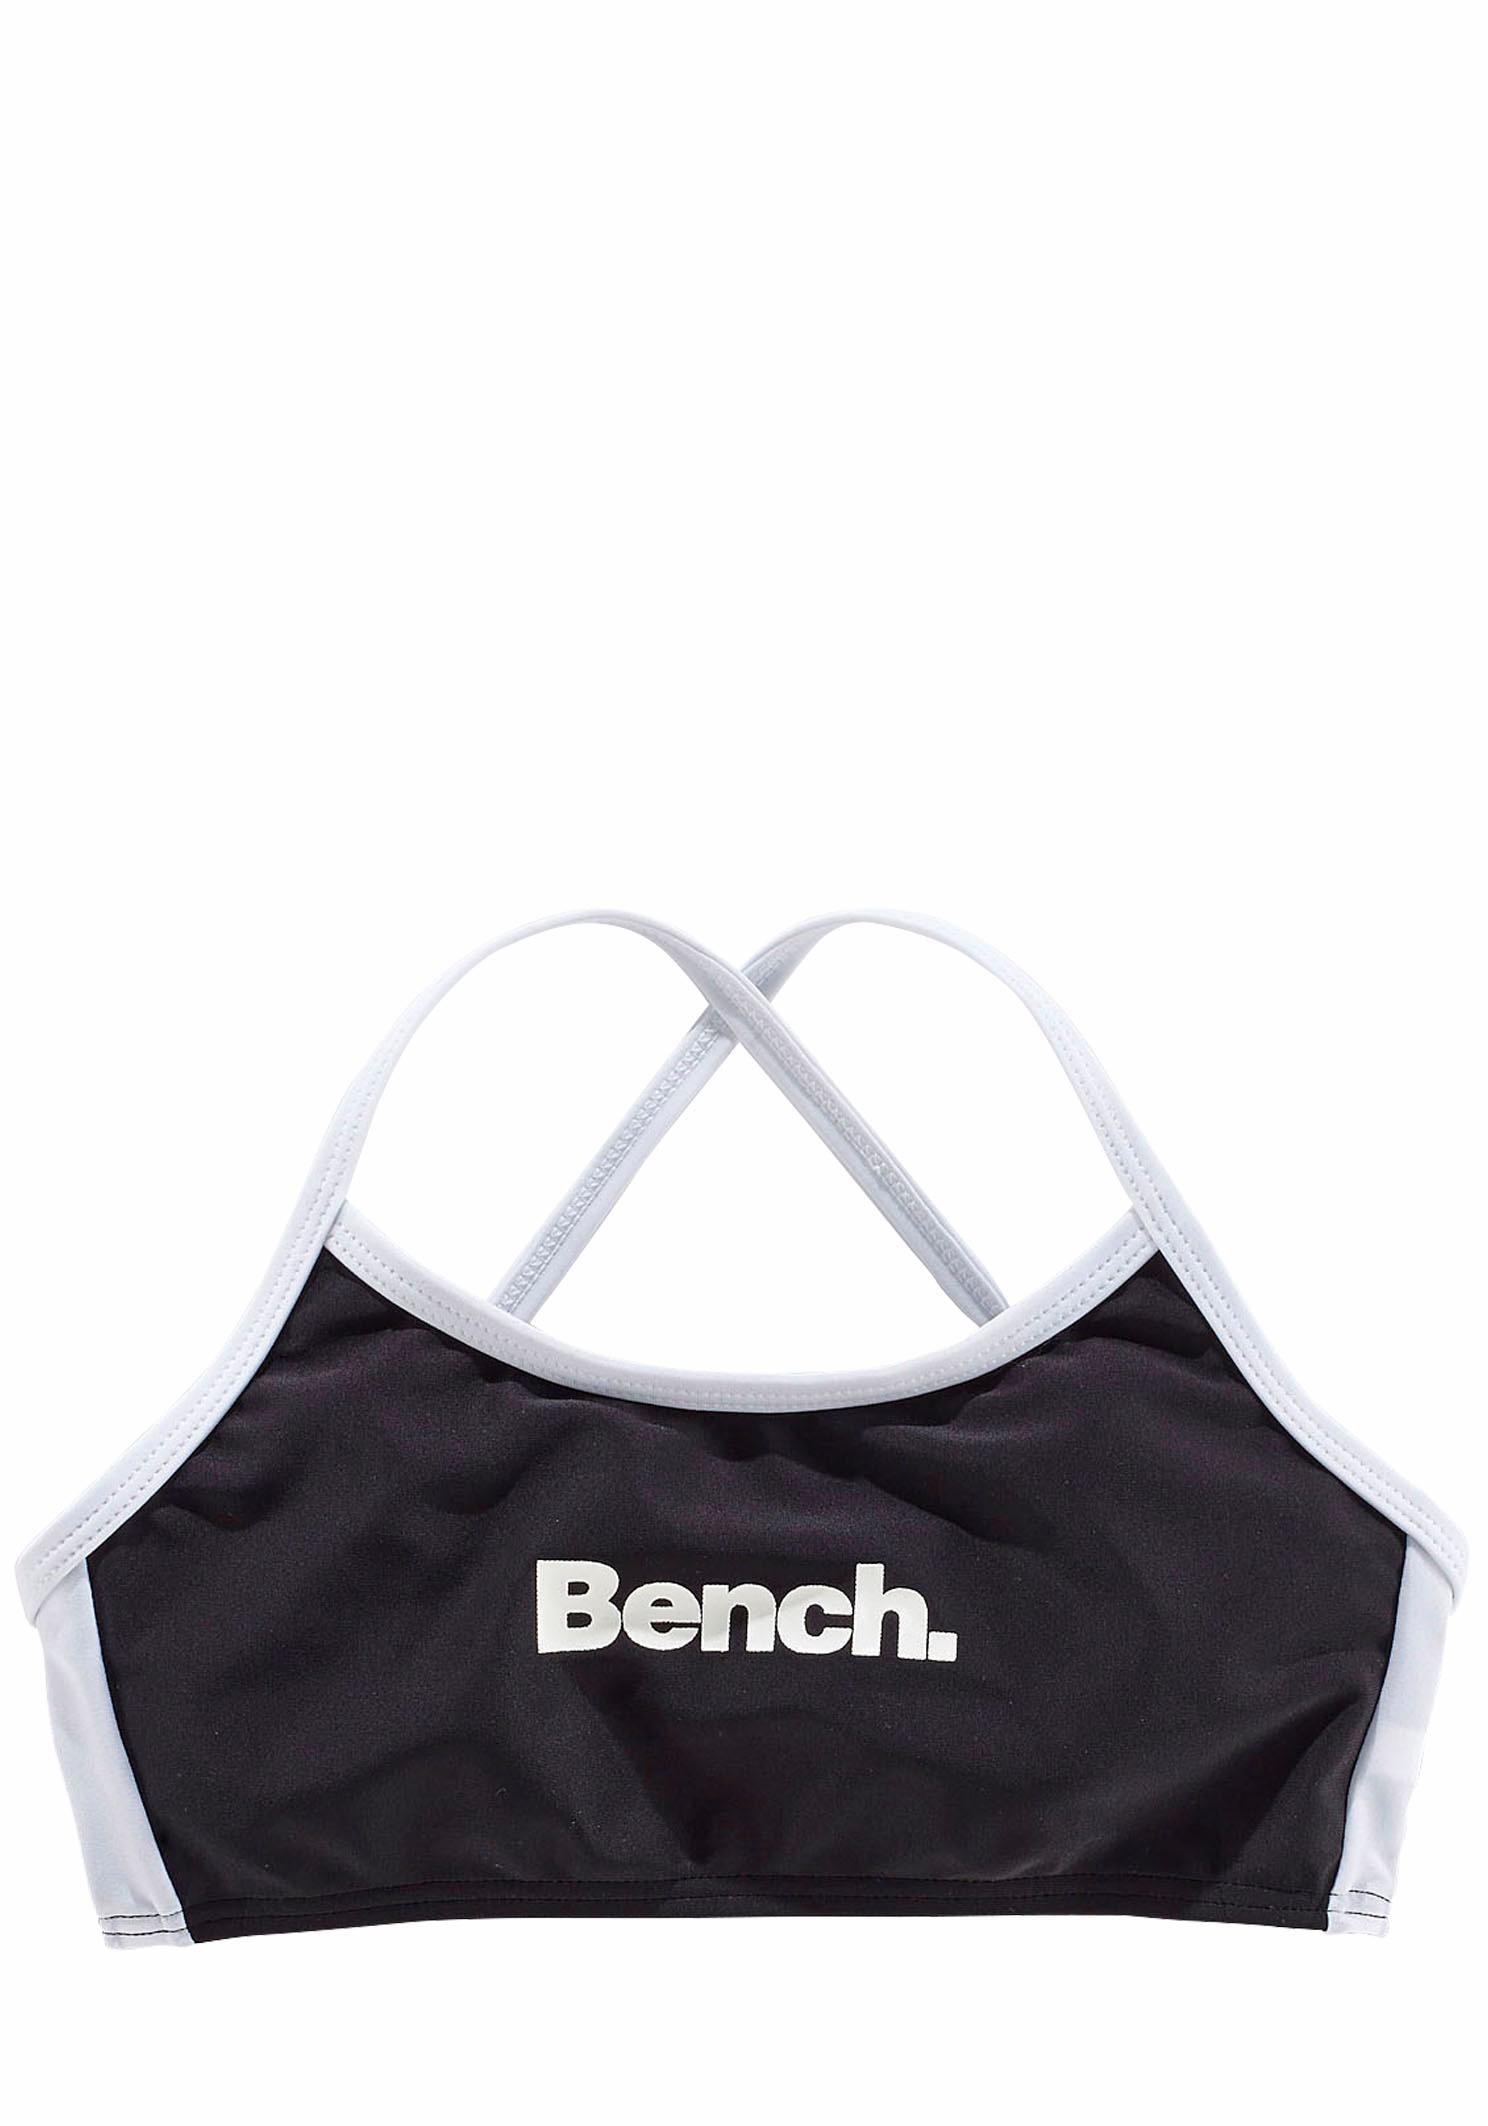 Bench. Bustier-Bikini mit regulierbaren BAUR online kaufen Trägern 